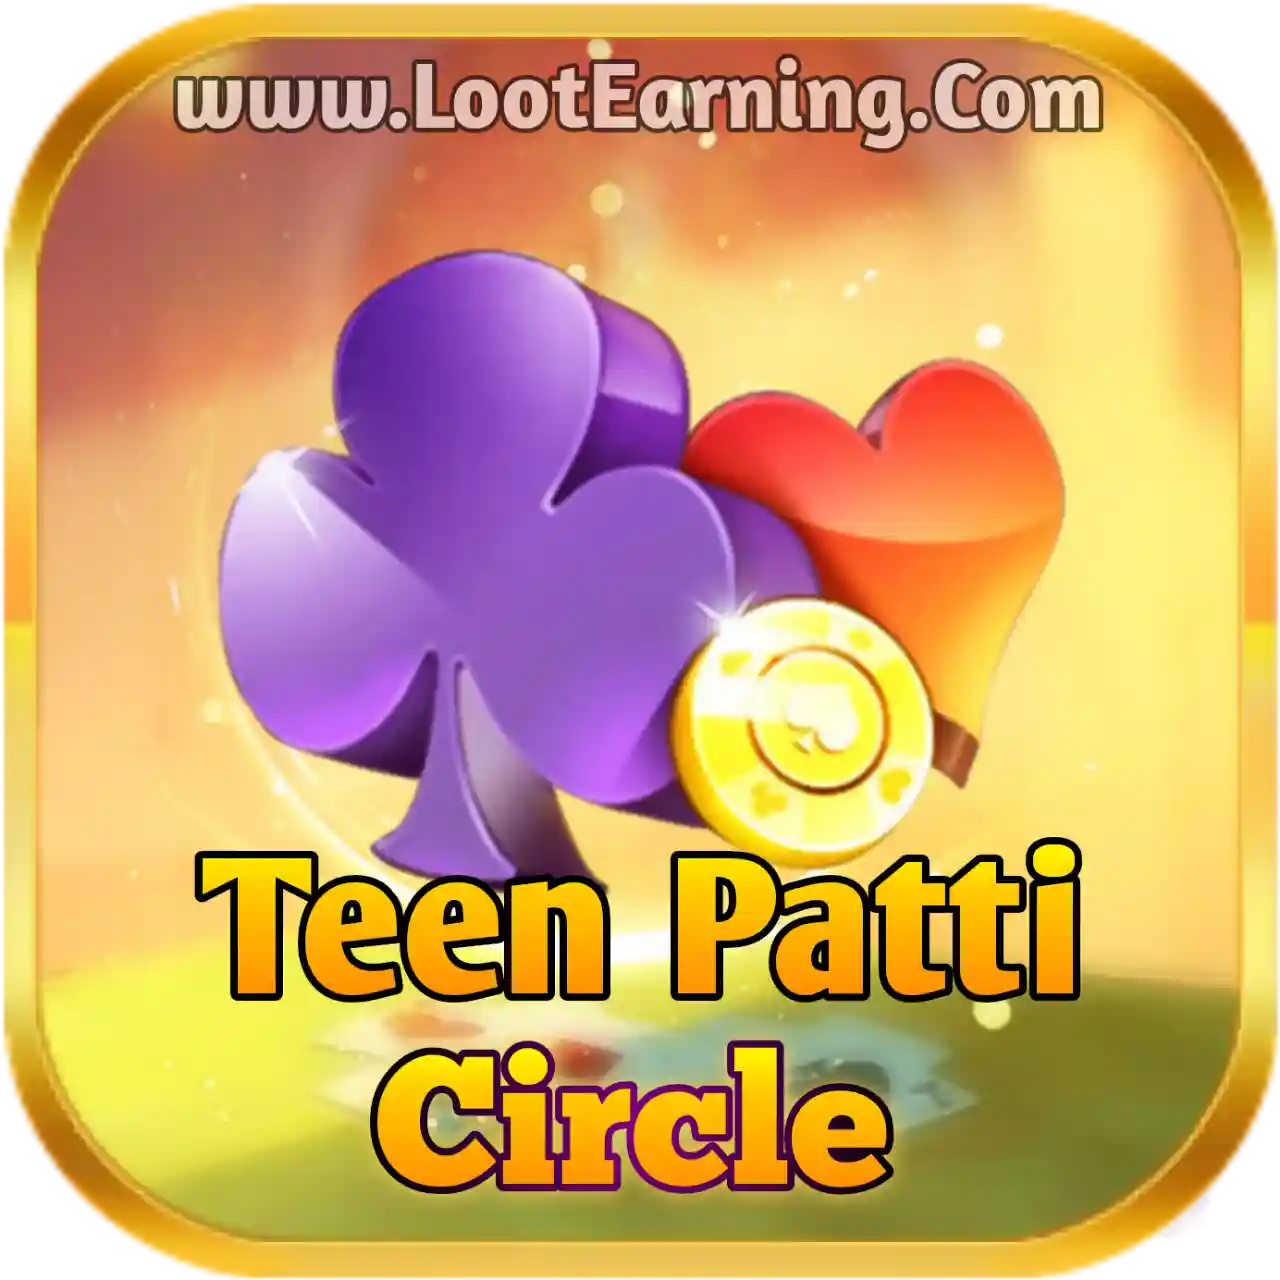 Teen Patti Circle - Teen Patti Circle